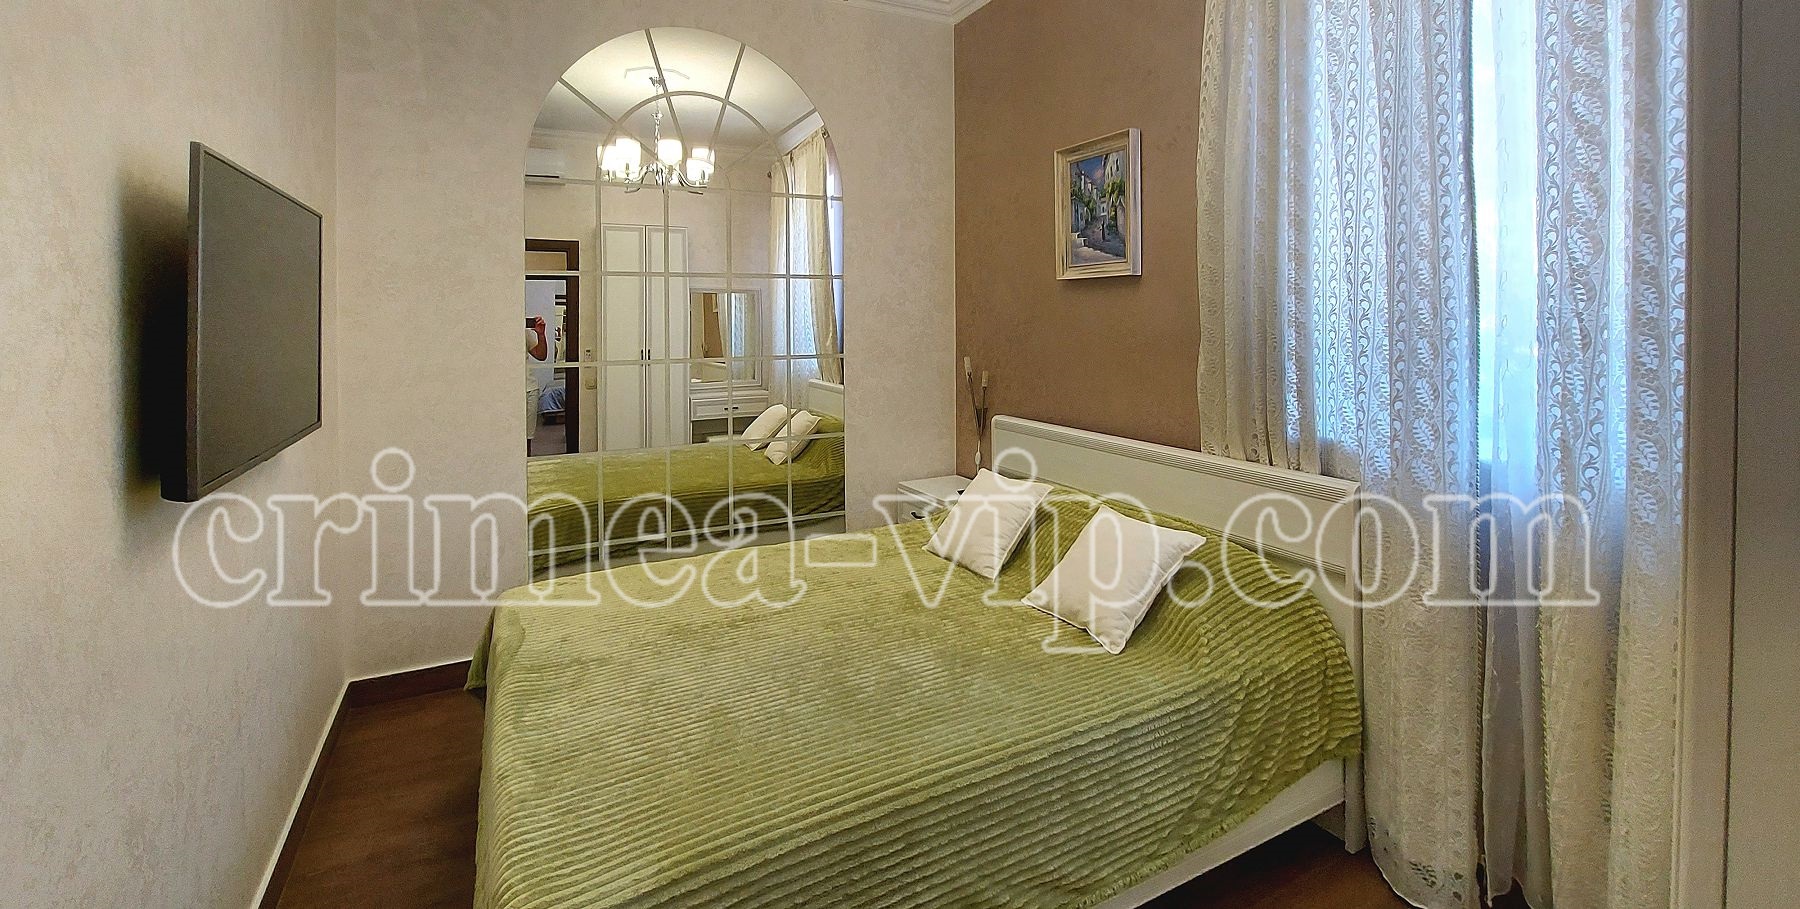 АП-3010. Апартамента на 2 спальни в Бекетово.